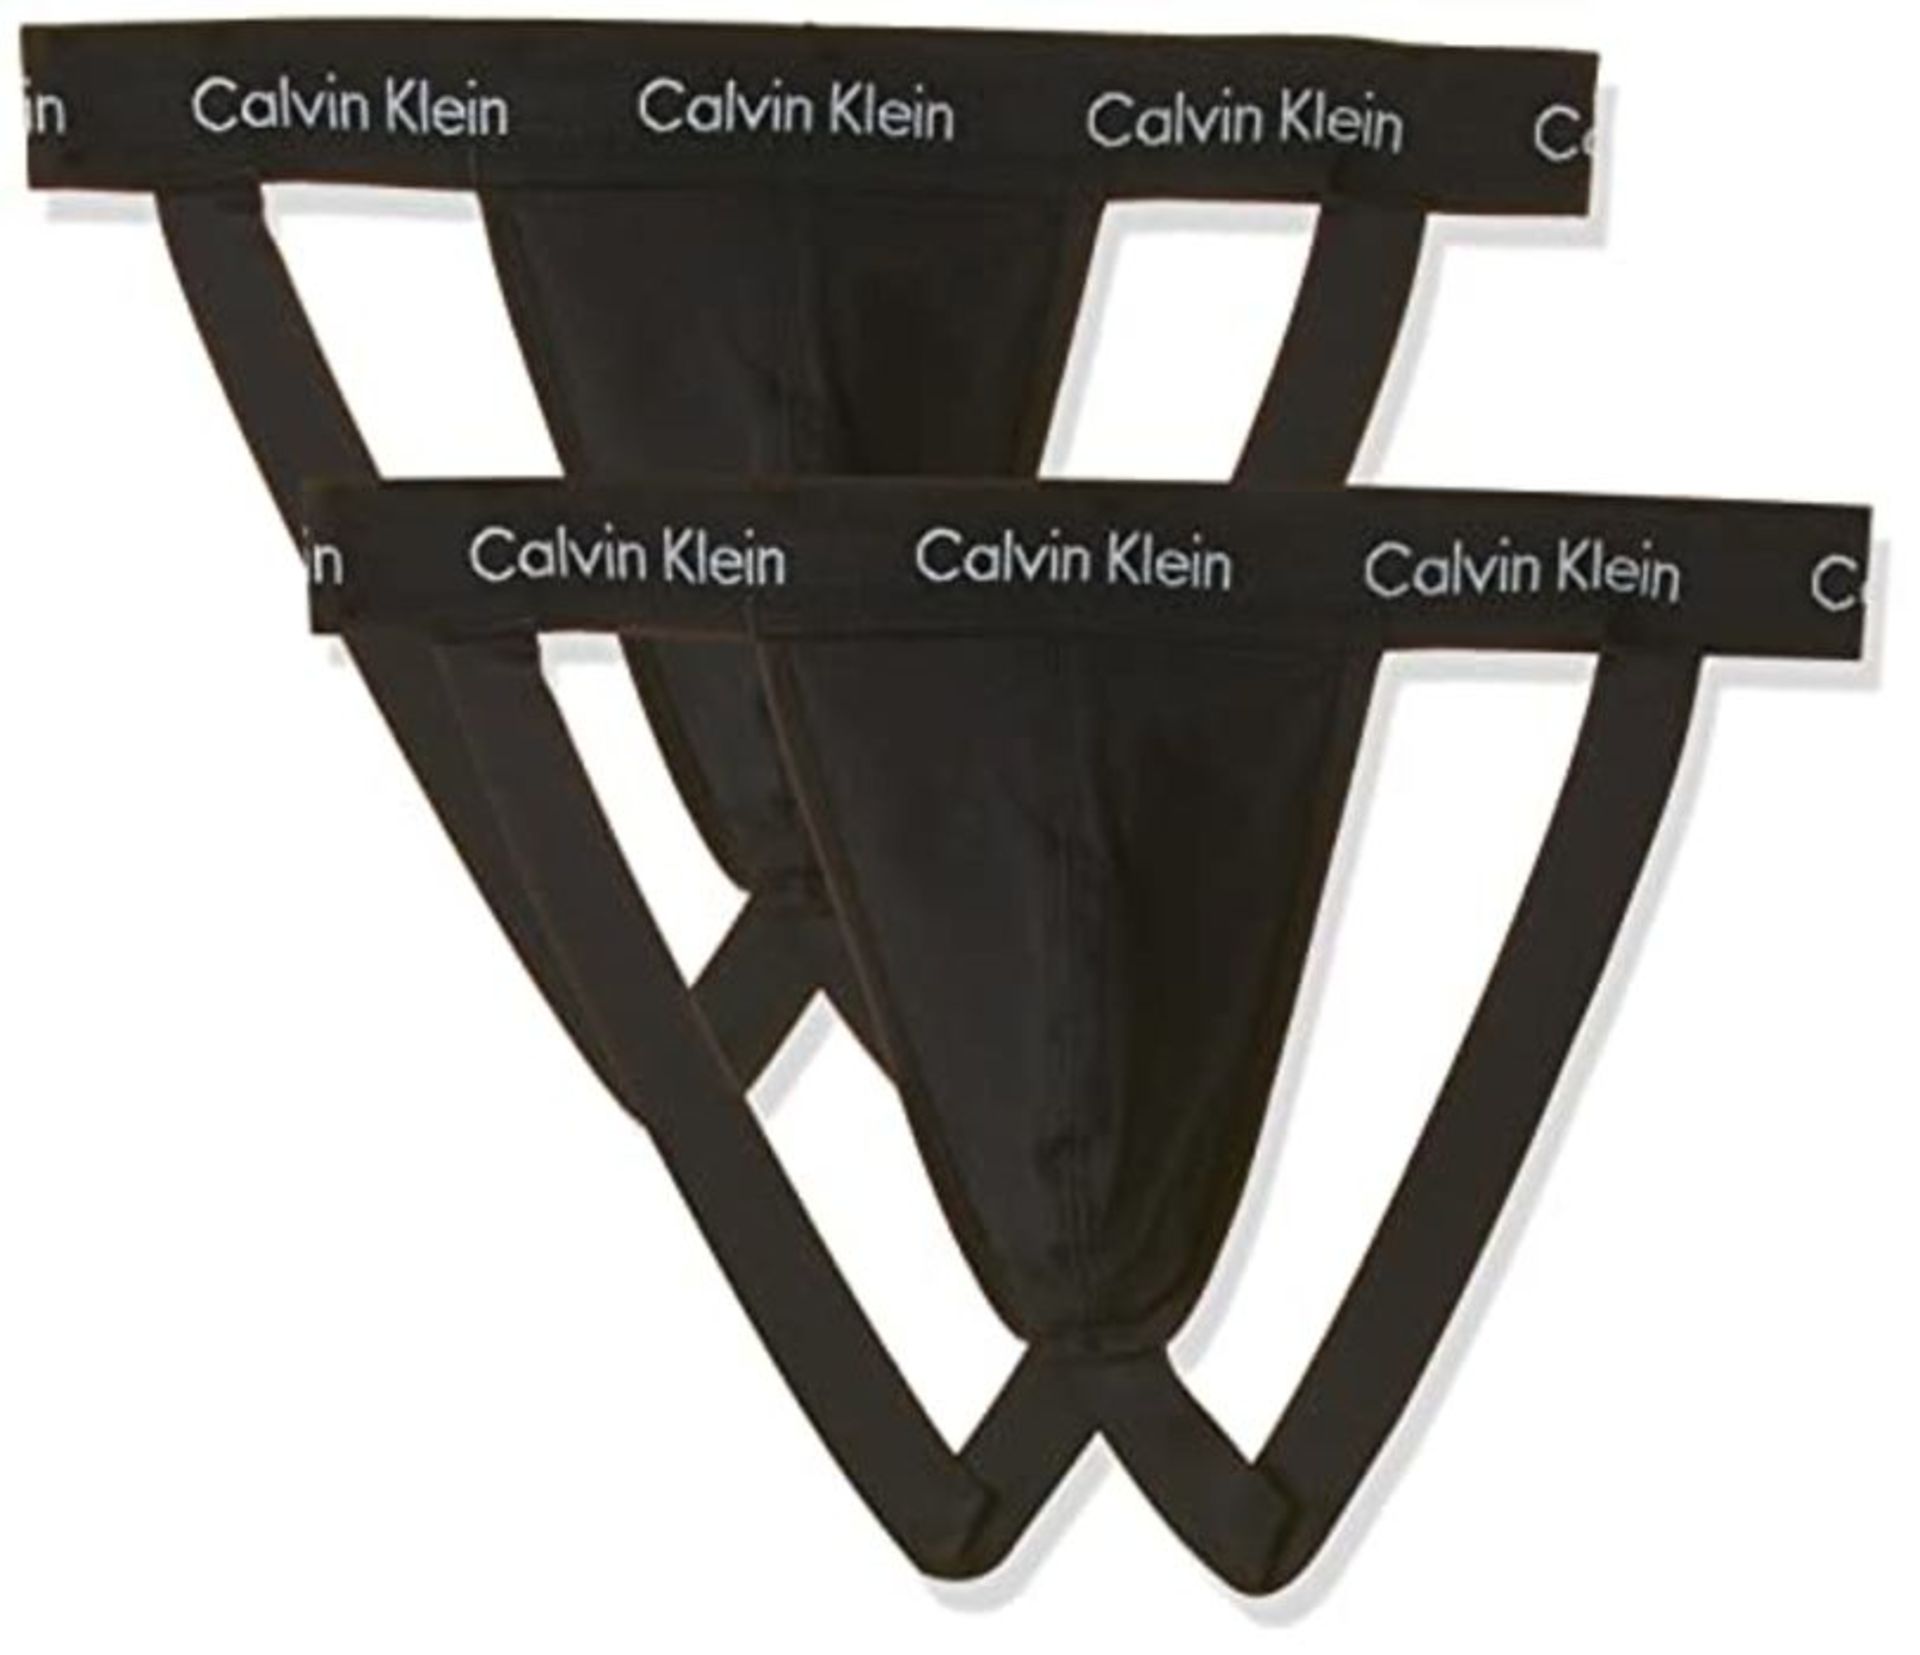 Calvin Klein - Jock Strap - Multipack of 2 - Mens Underwear - Sports Underwear Men - C